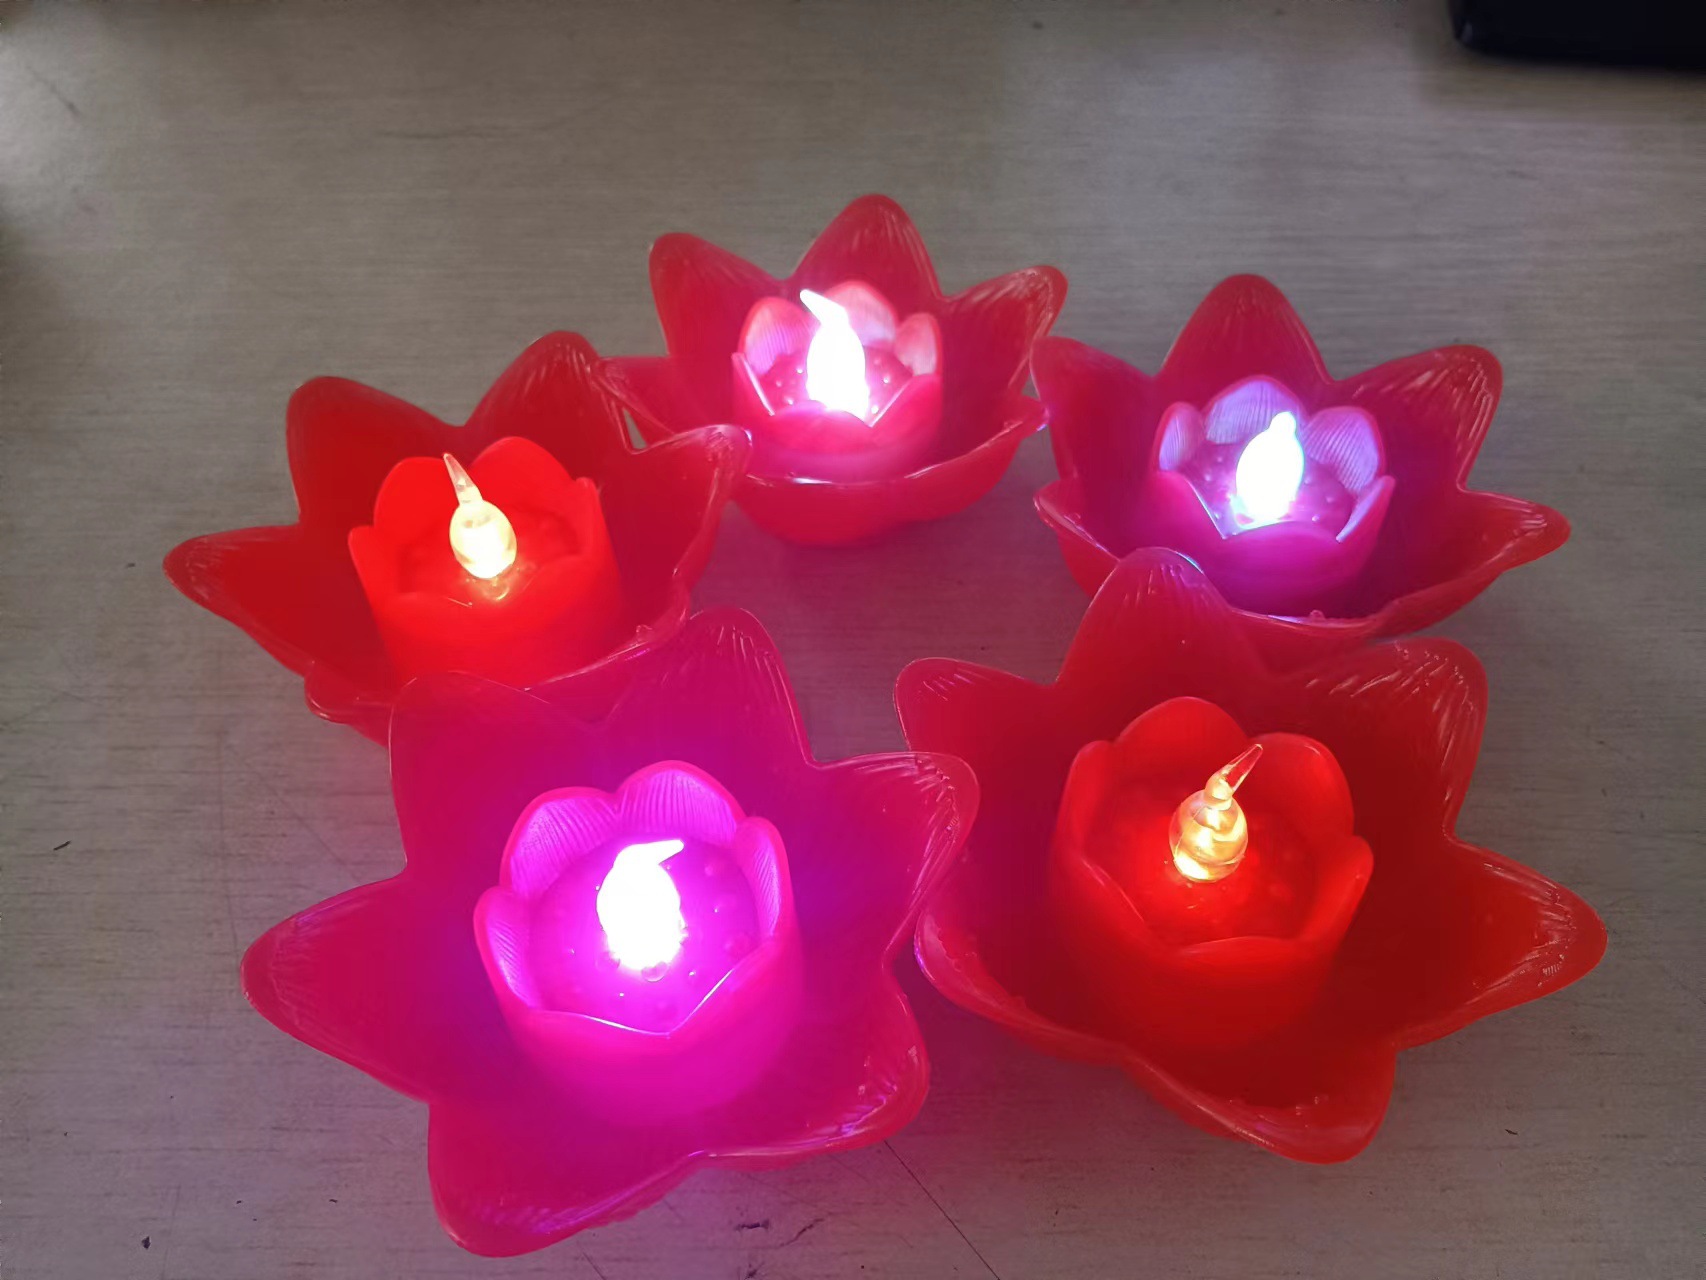 Lotus Lamp Led Imitation Luminous Electronic Candle Colorful Lotus Lamp Wish River Lanterns Spring Festival Supplies Buddha Worship Blessing Lamp